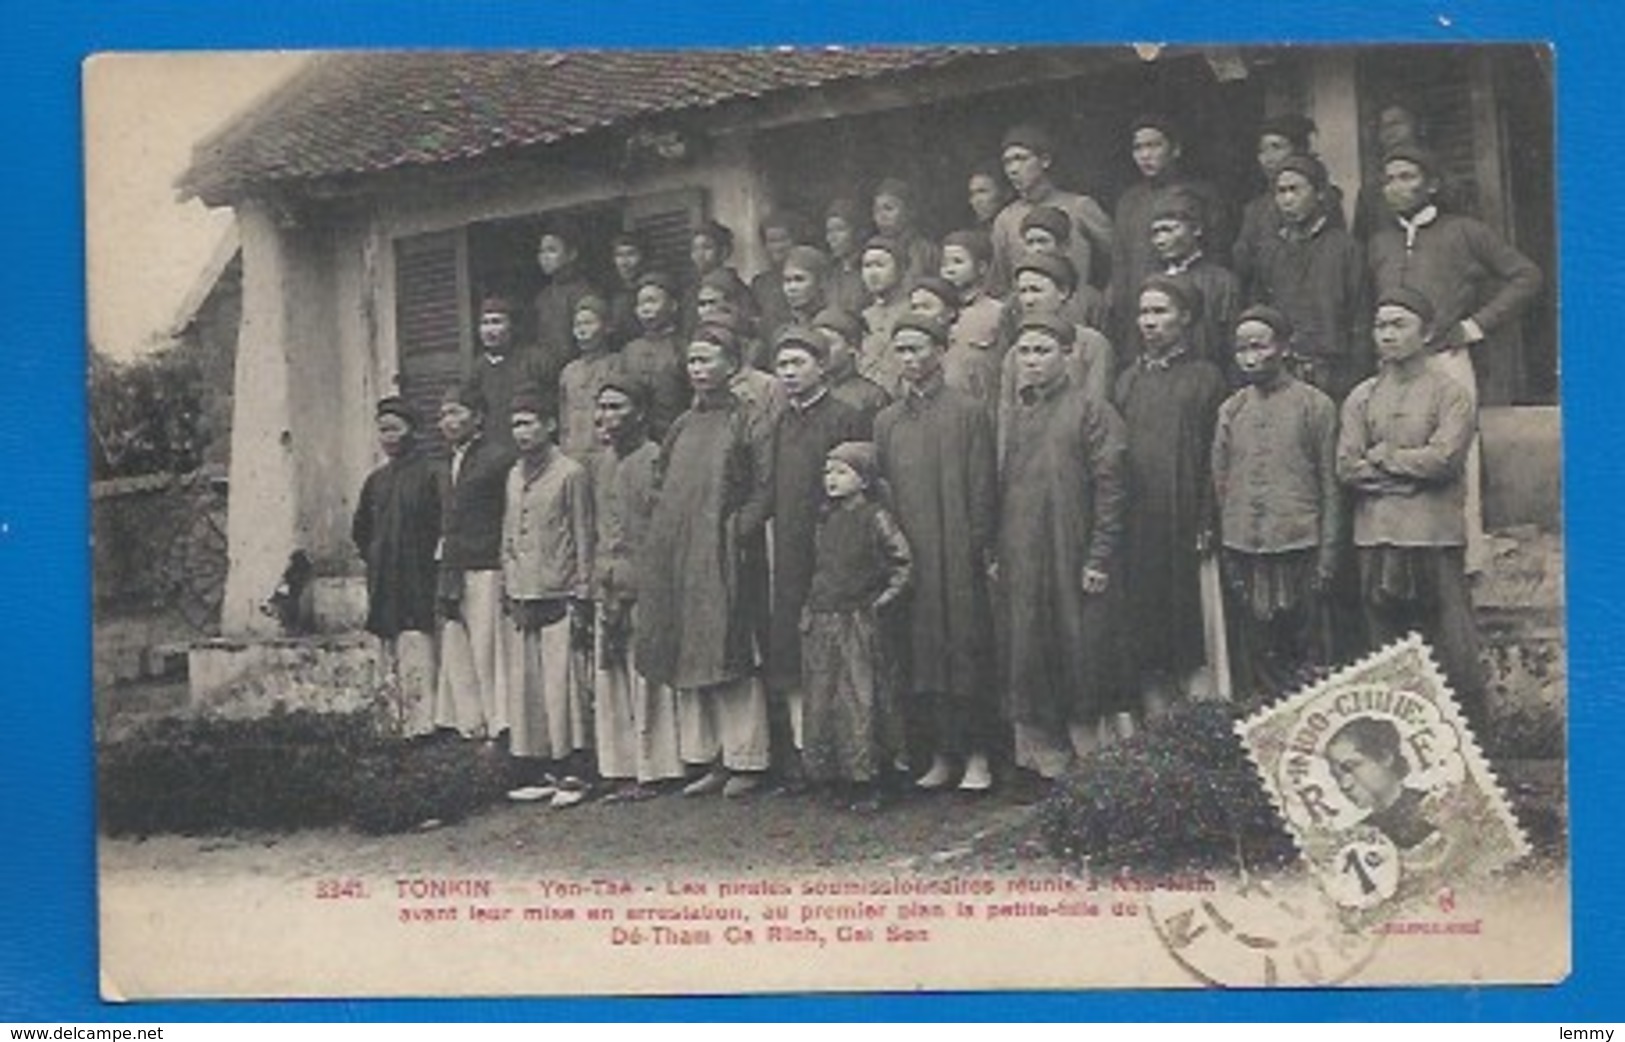 TONKIN - TROUBLES DE SEPTEMBRE 1908 - LA PETITE FILLE DE  DÉ-THAM CA RINH - PIRATES EN ARRESTATION... - Vietnam